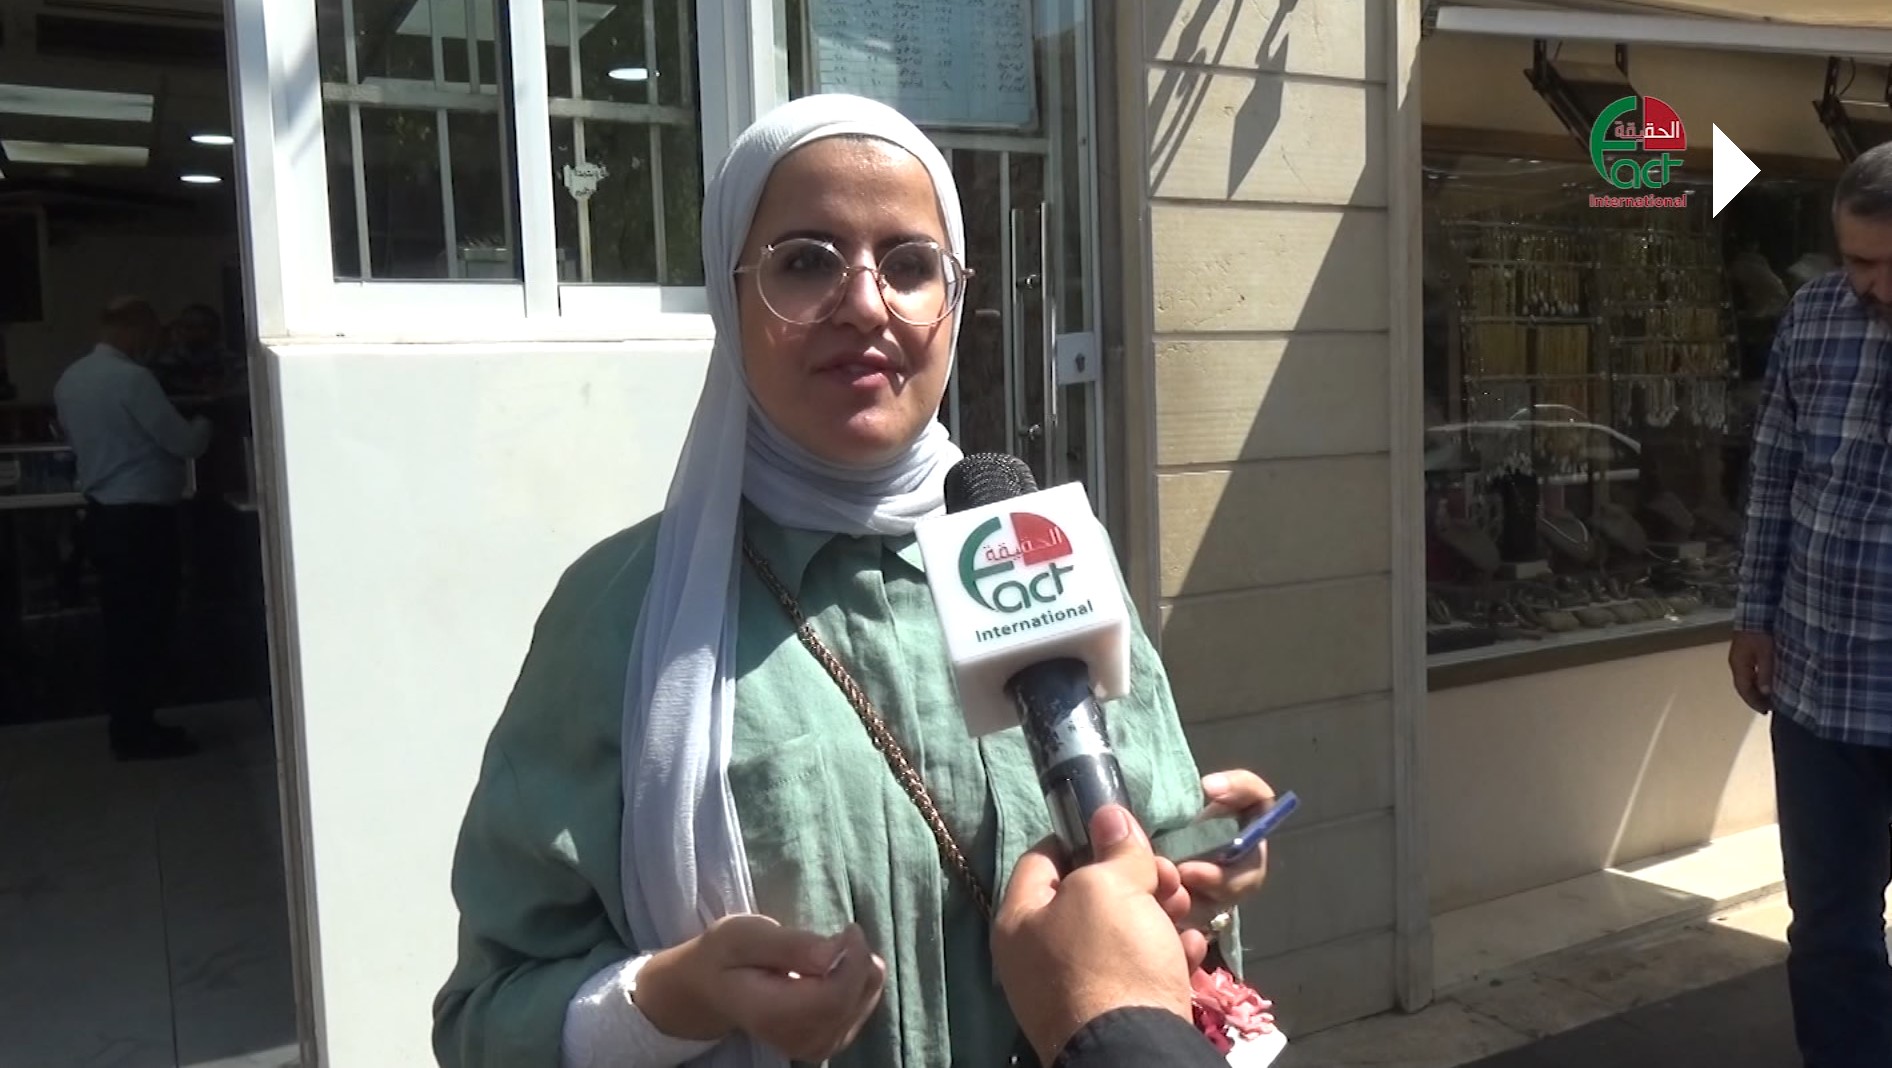 اردنيون يتحدثون عن طرق حماية أنفسهم من فيروس كورونا.. تقرير تلفزيوني